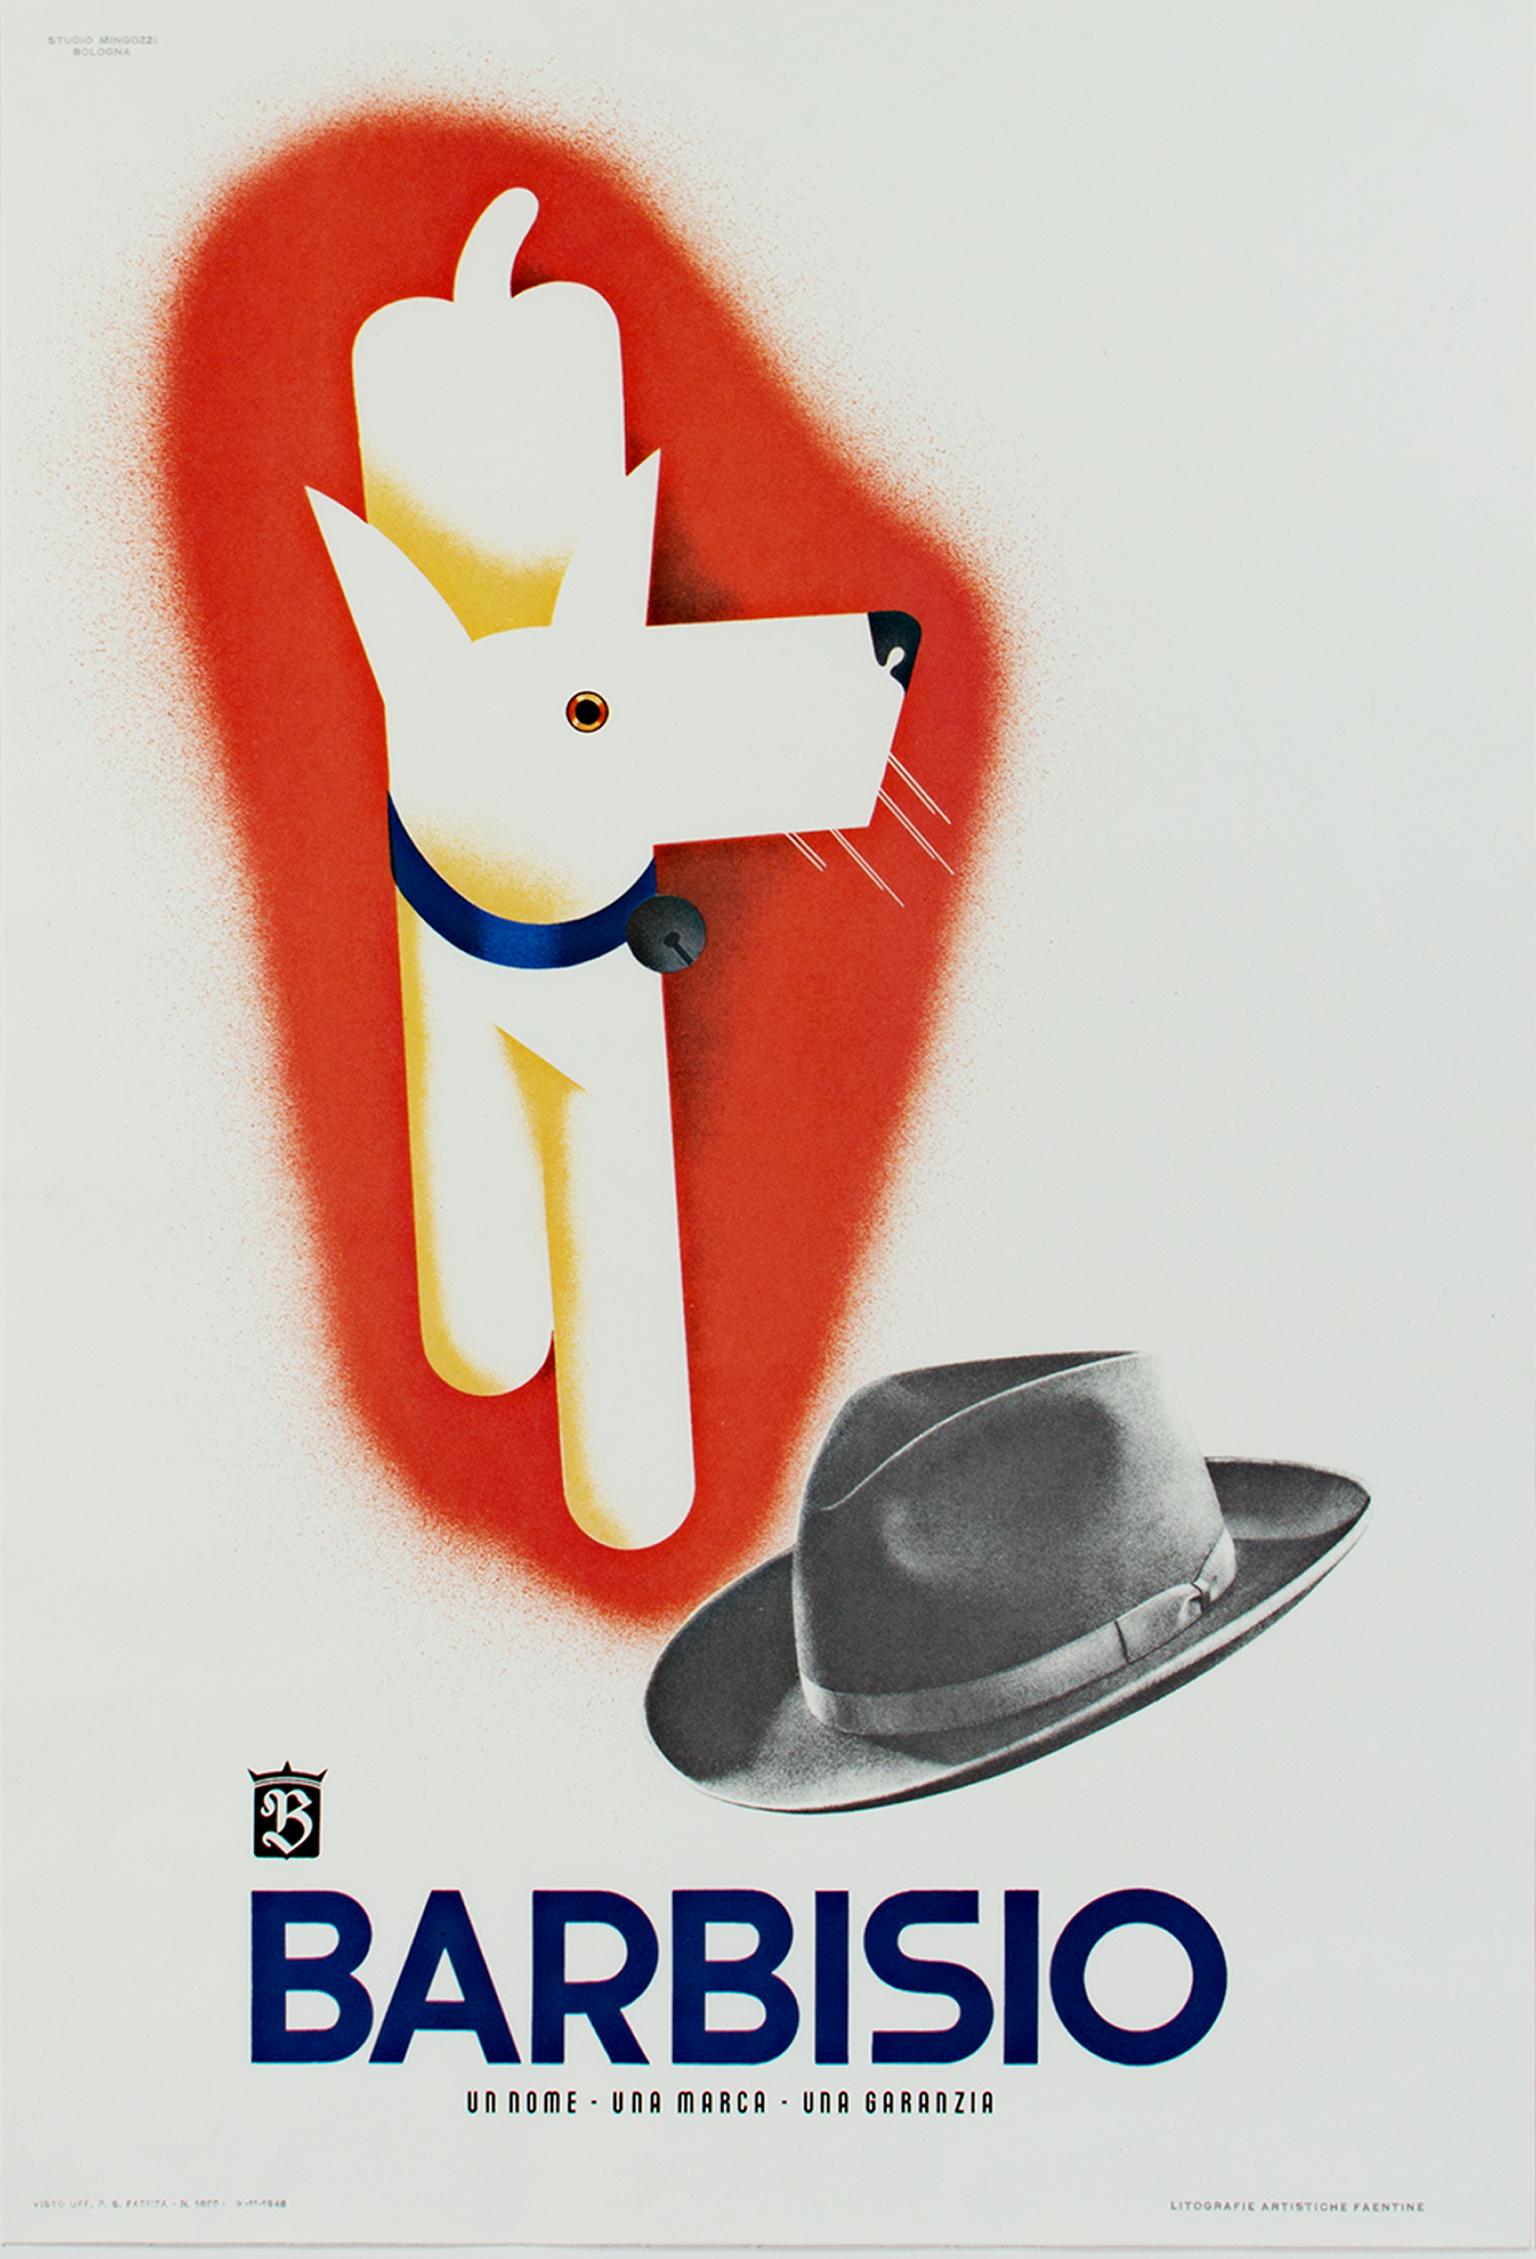 "Barbisio (Hund & Hut)" ist ein Offset-Farblithografie-Plakat von Giovanni Mingozzi, das hier aus dem Originaldruck des Plakats stammt. Es zeigt einen weißen Hund, umgeben von einer roten Aura und einem schwarz-weißen Hut. Dieses Plakat ist eine